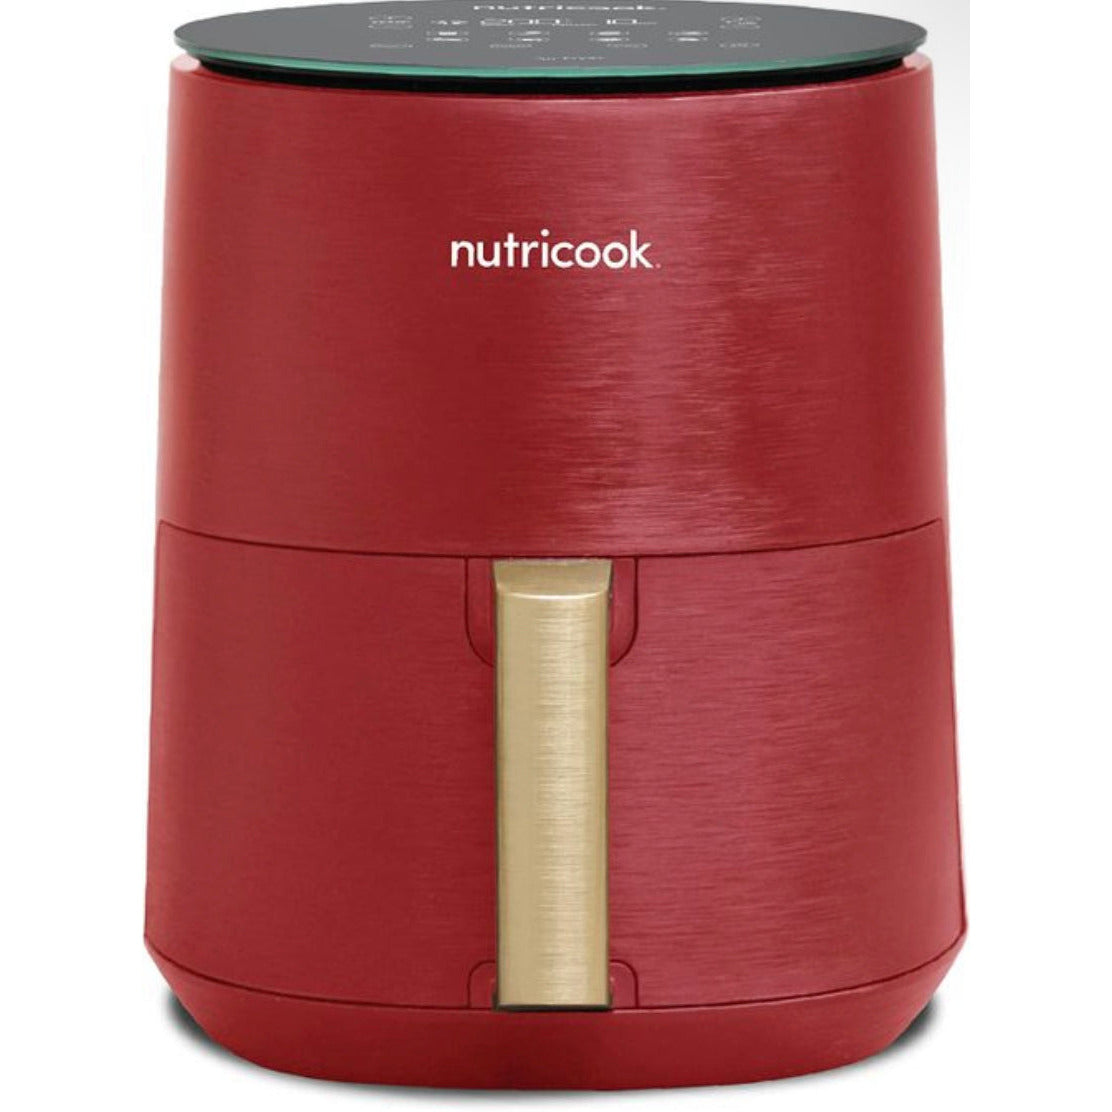 Air-fryer Mini Nutricook, 3 Liter, 1500 W